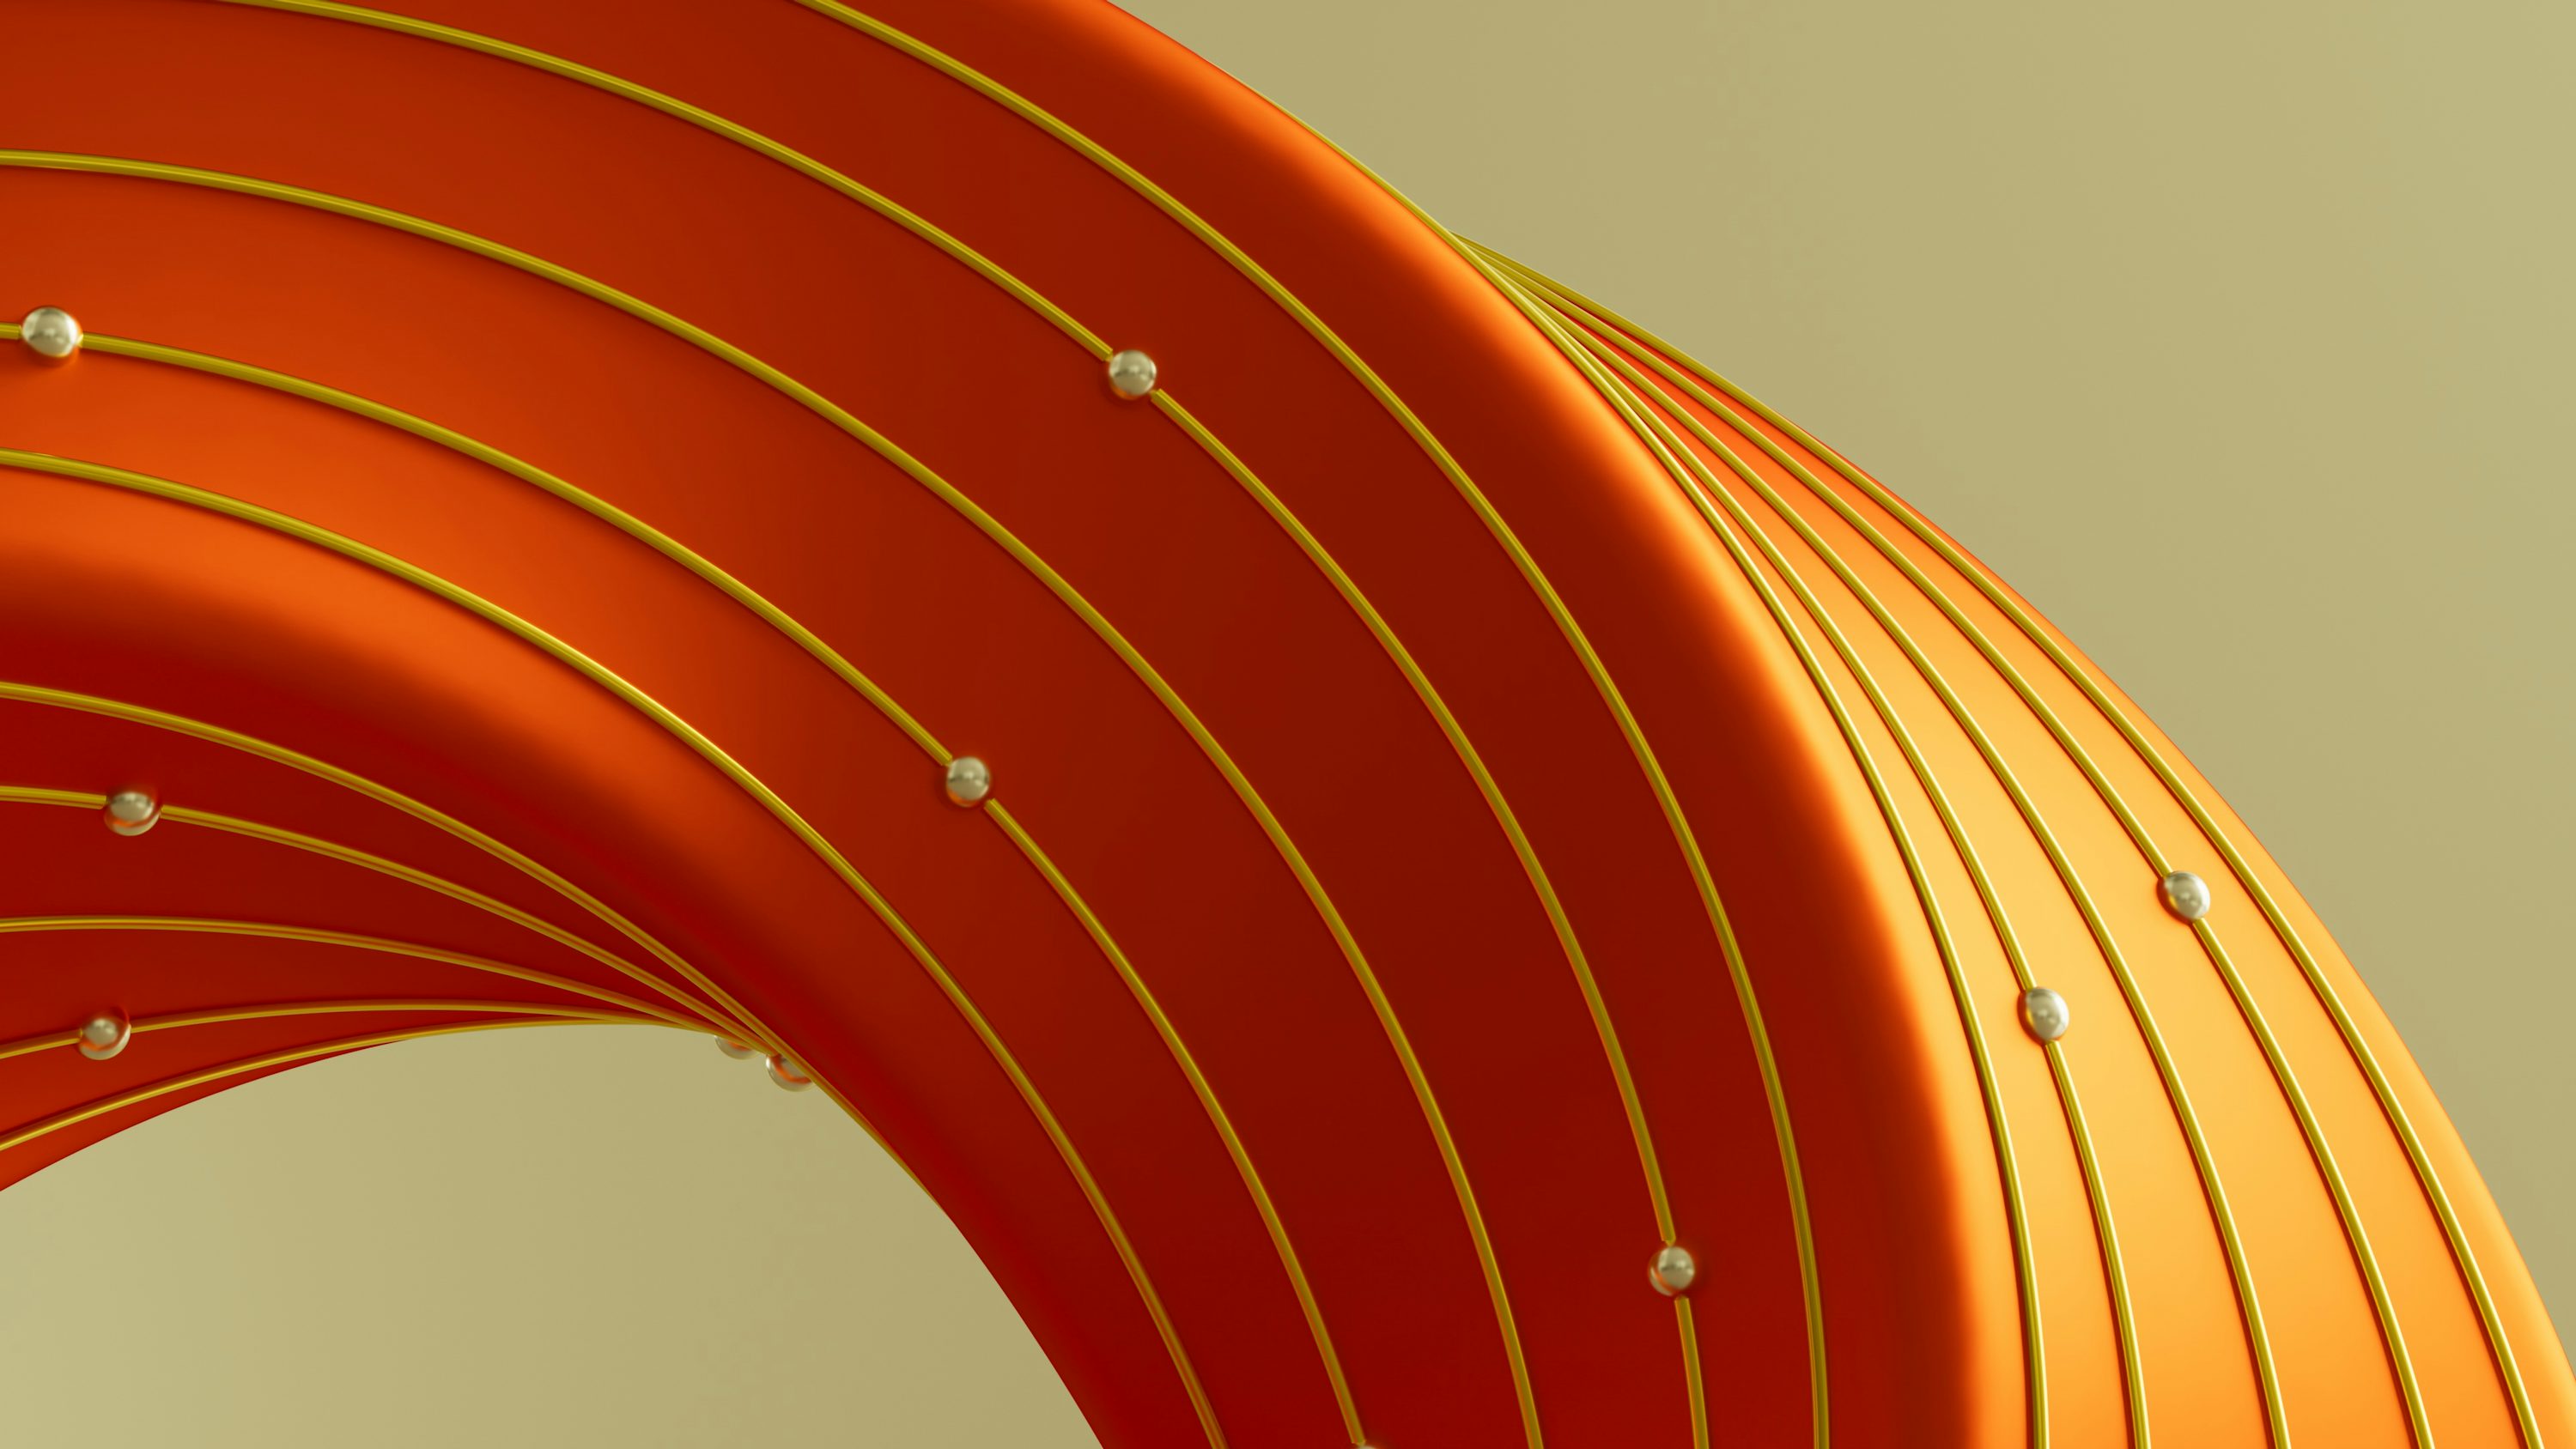 une image abstraite d’un objet orange incurvé